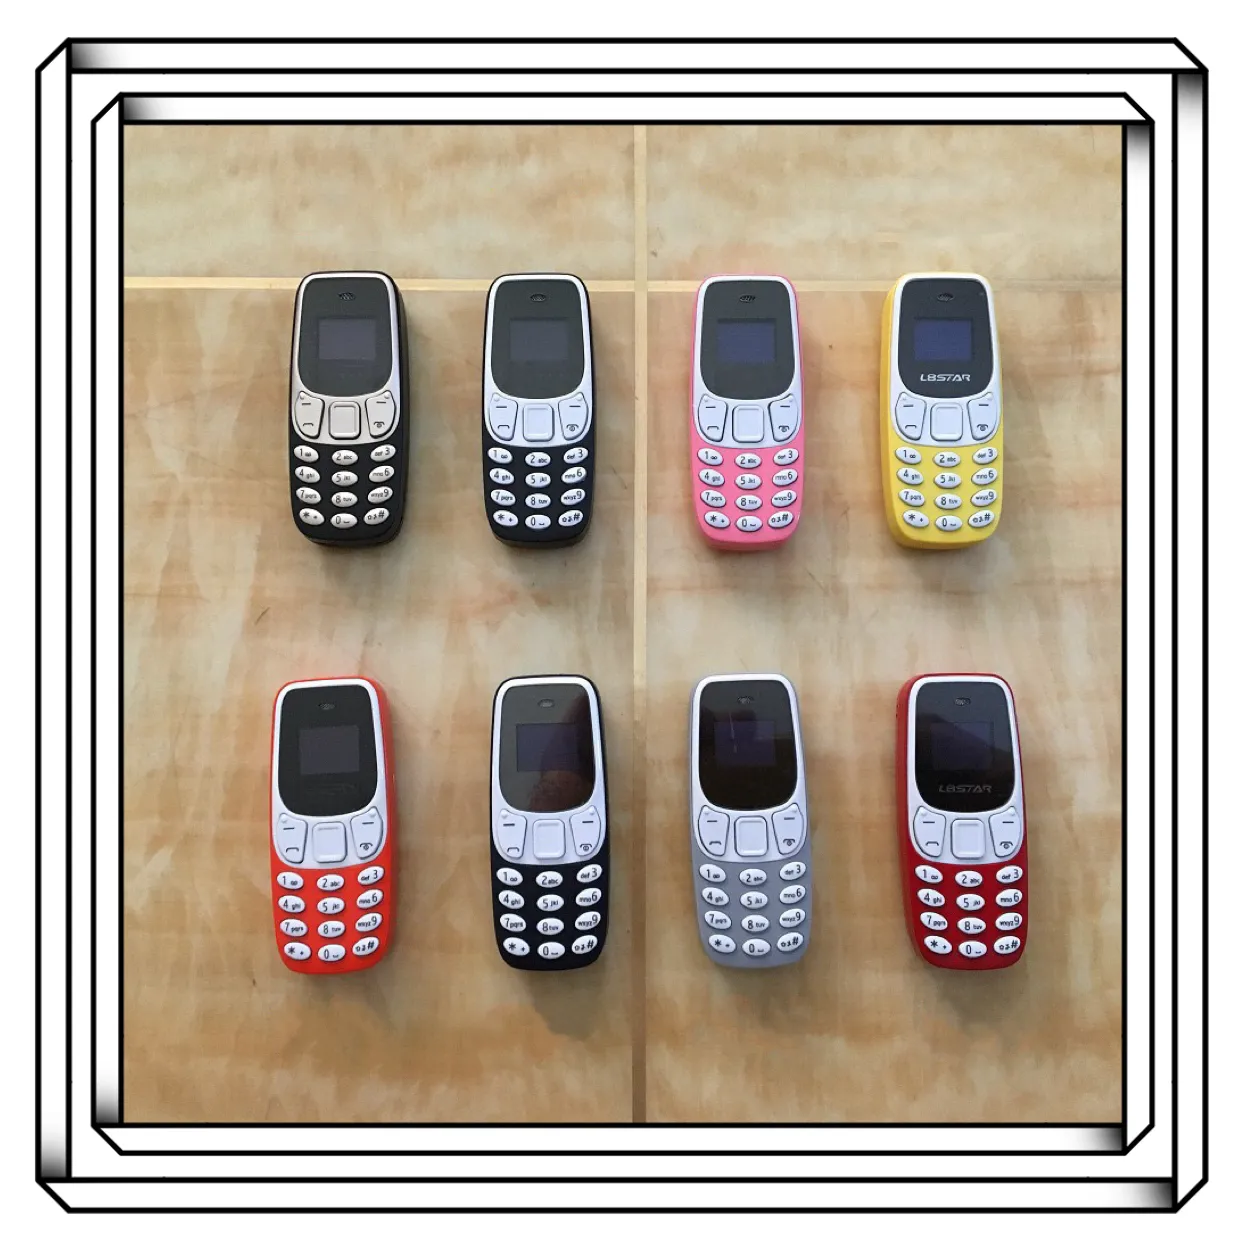 Ponsel Porket Mini, ponsel Keypad kecil termurah BM10